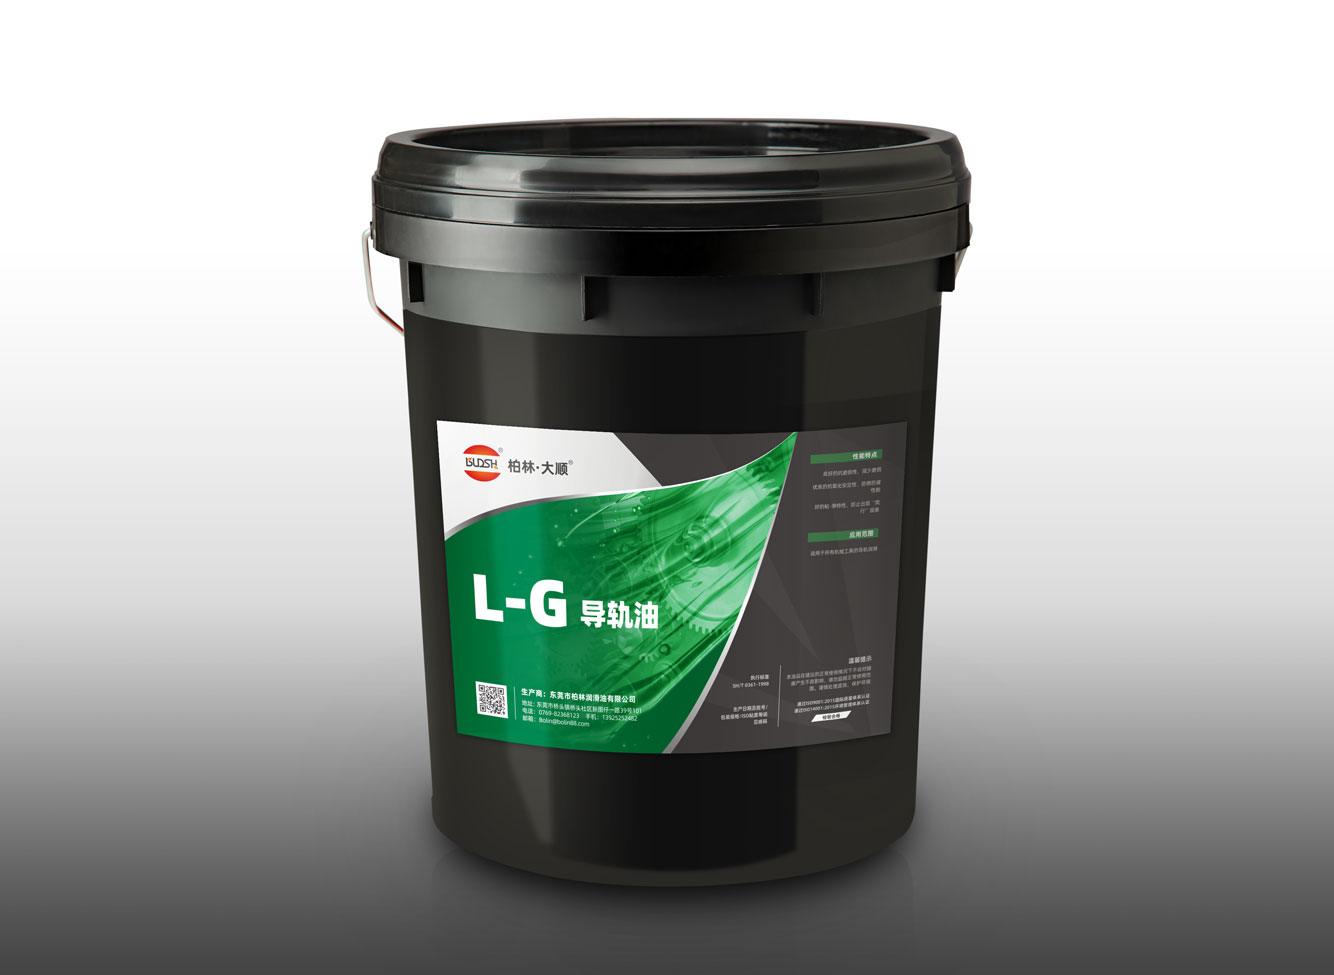  L-G导轨油